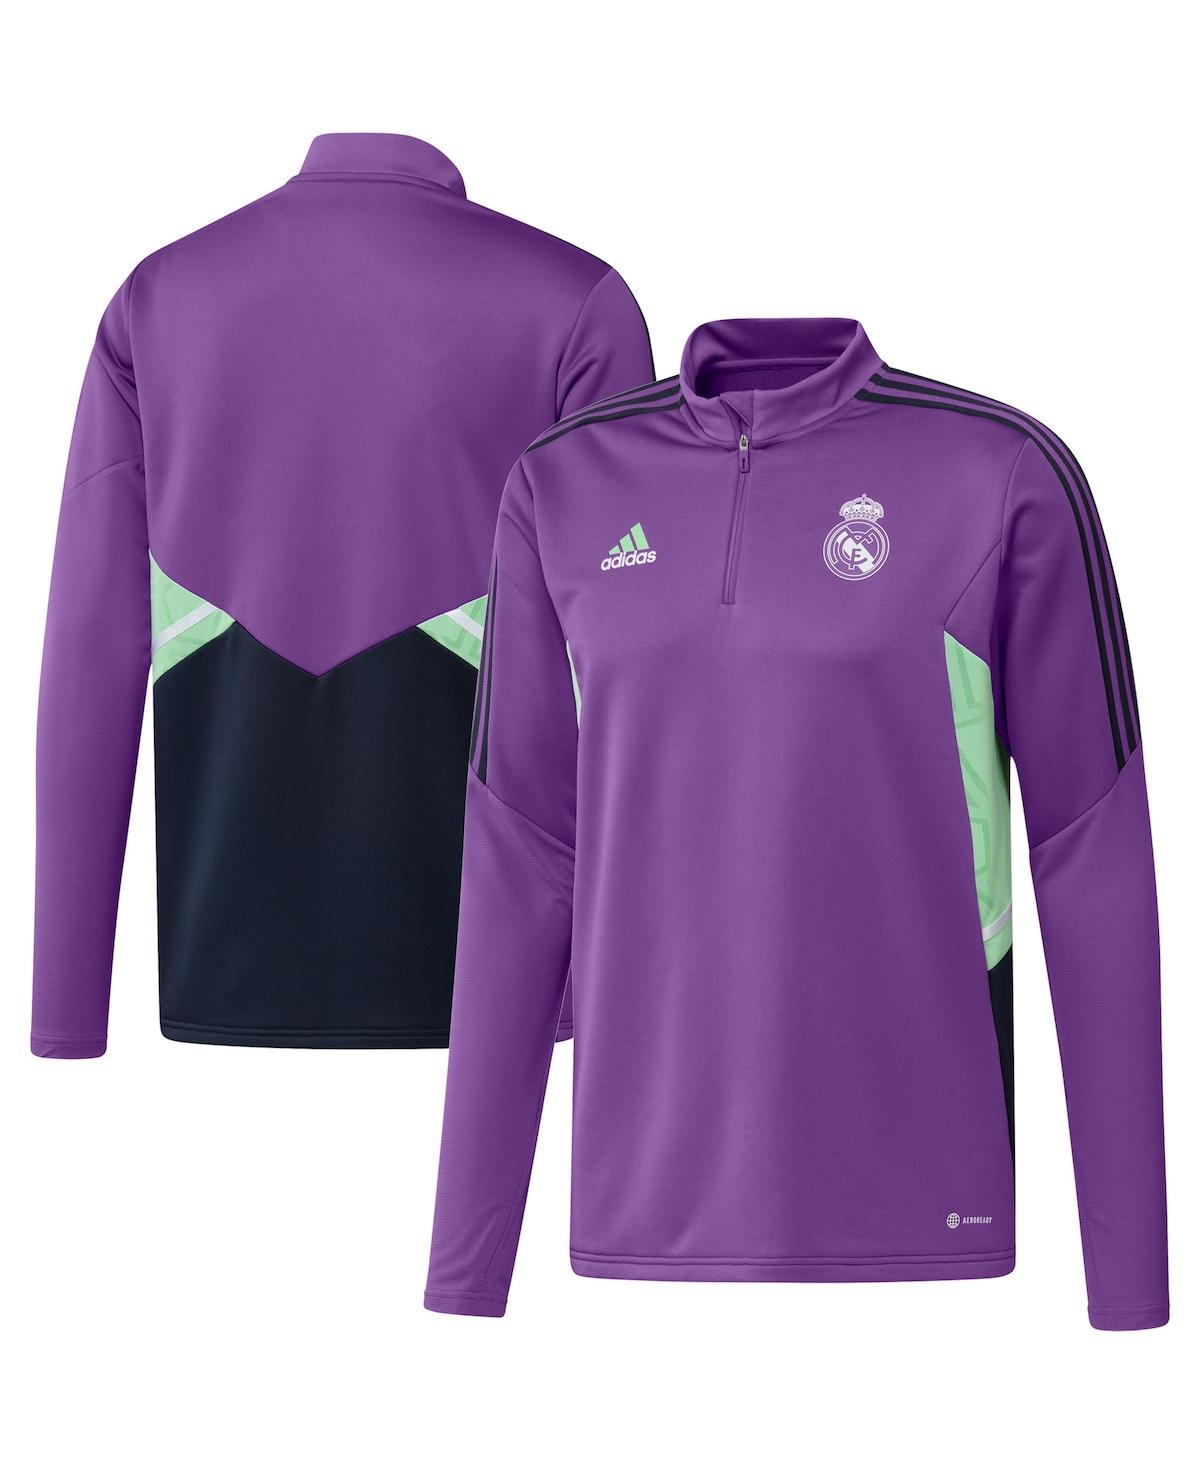 Adidas Originals Men's Adidas Purple Real Madrid Training Aeroready Quarter-zip Top